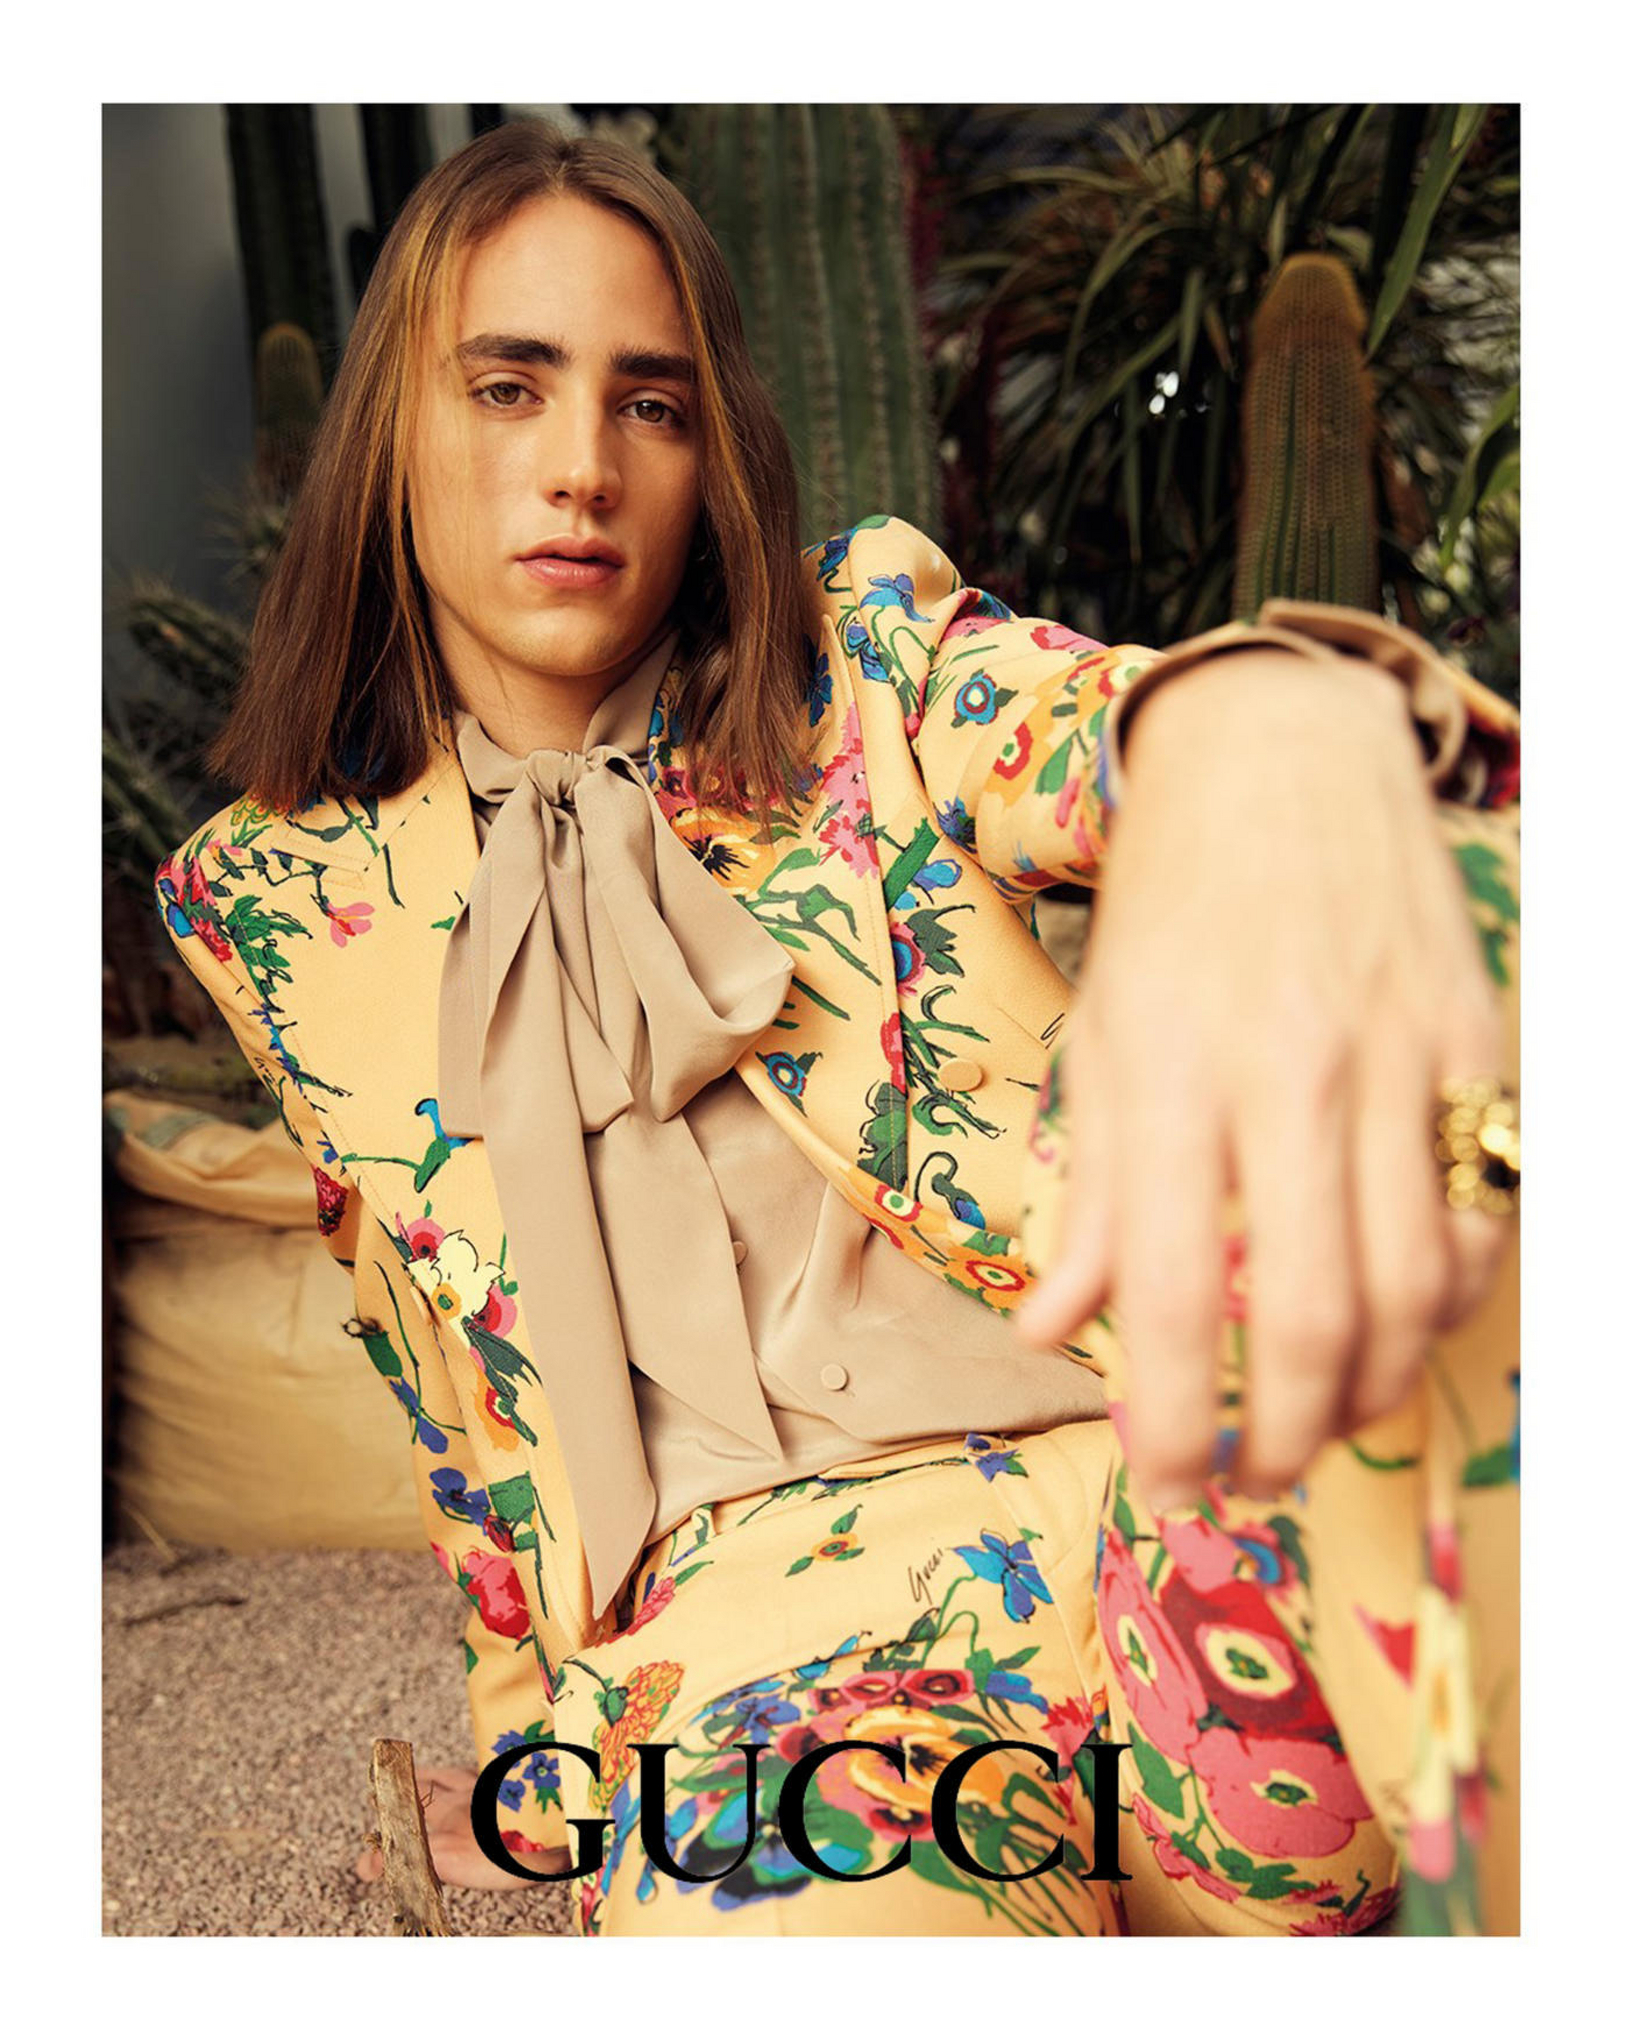 1-Nouveautés Gucci Catalogue Avril 2021